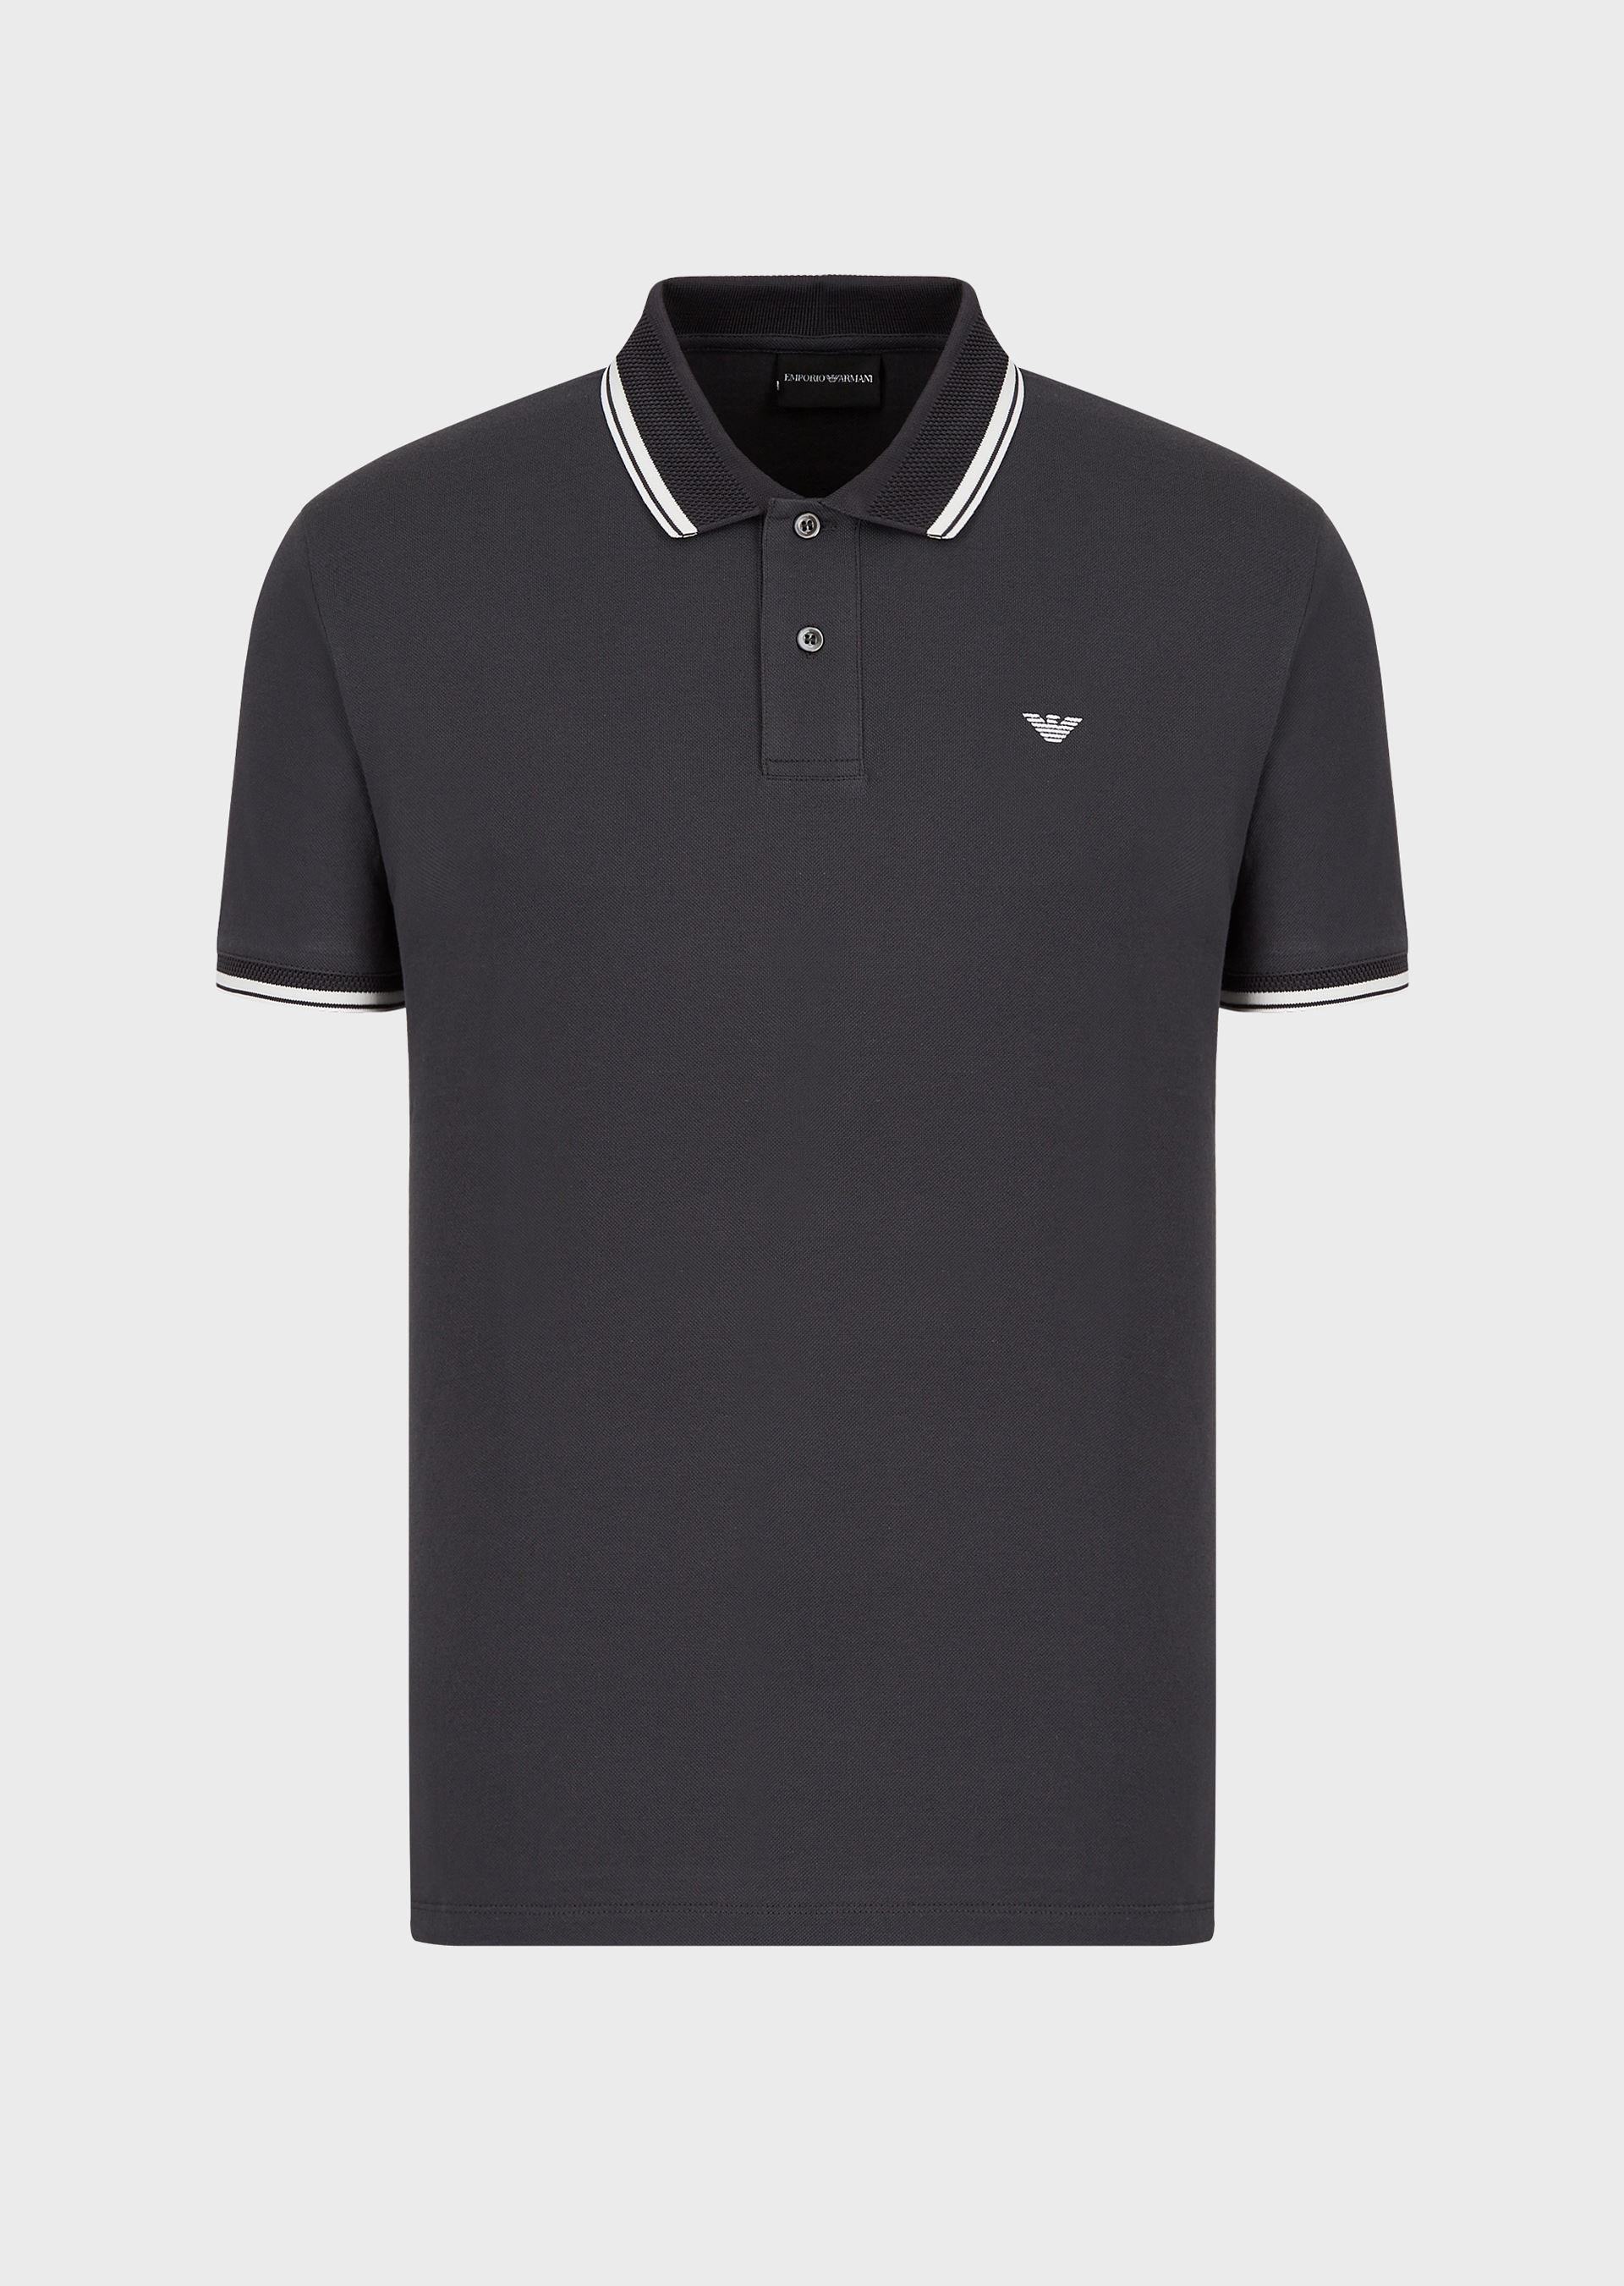 Emporio Armani Polo Shirts - Item 12560018 In Dark Gray